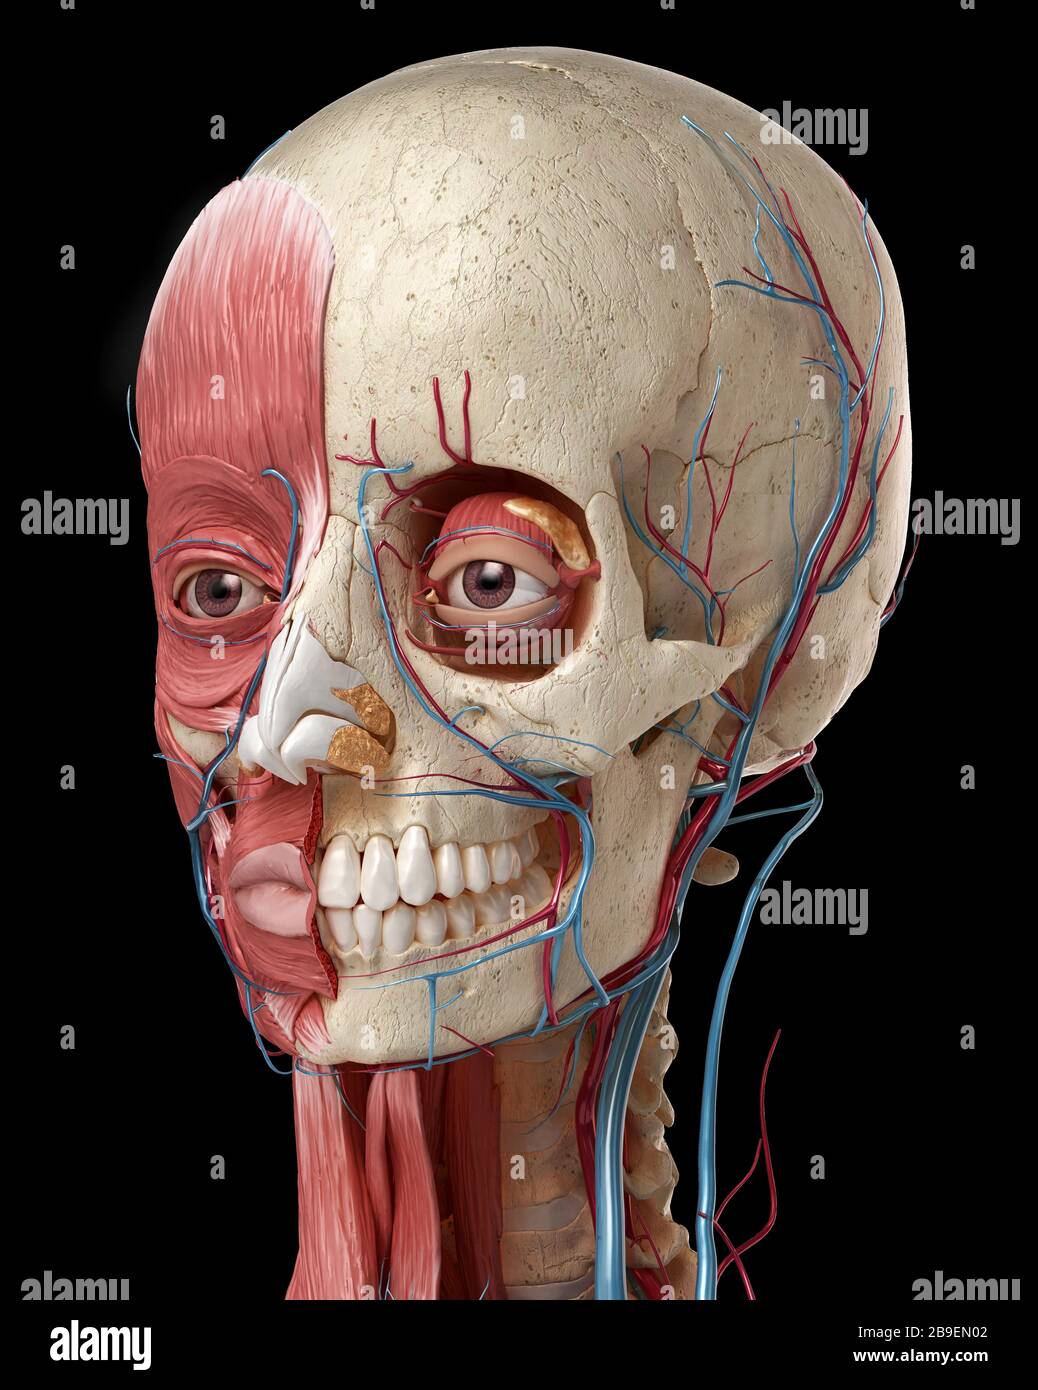 Anatomia umana della testa con cranio, bulbi oculari, vasi sanguigni e muscoli, sfondo nero. Foto Stock